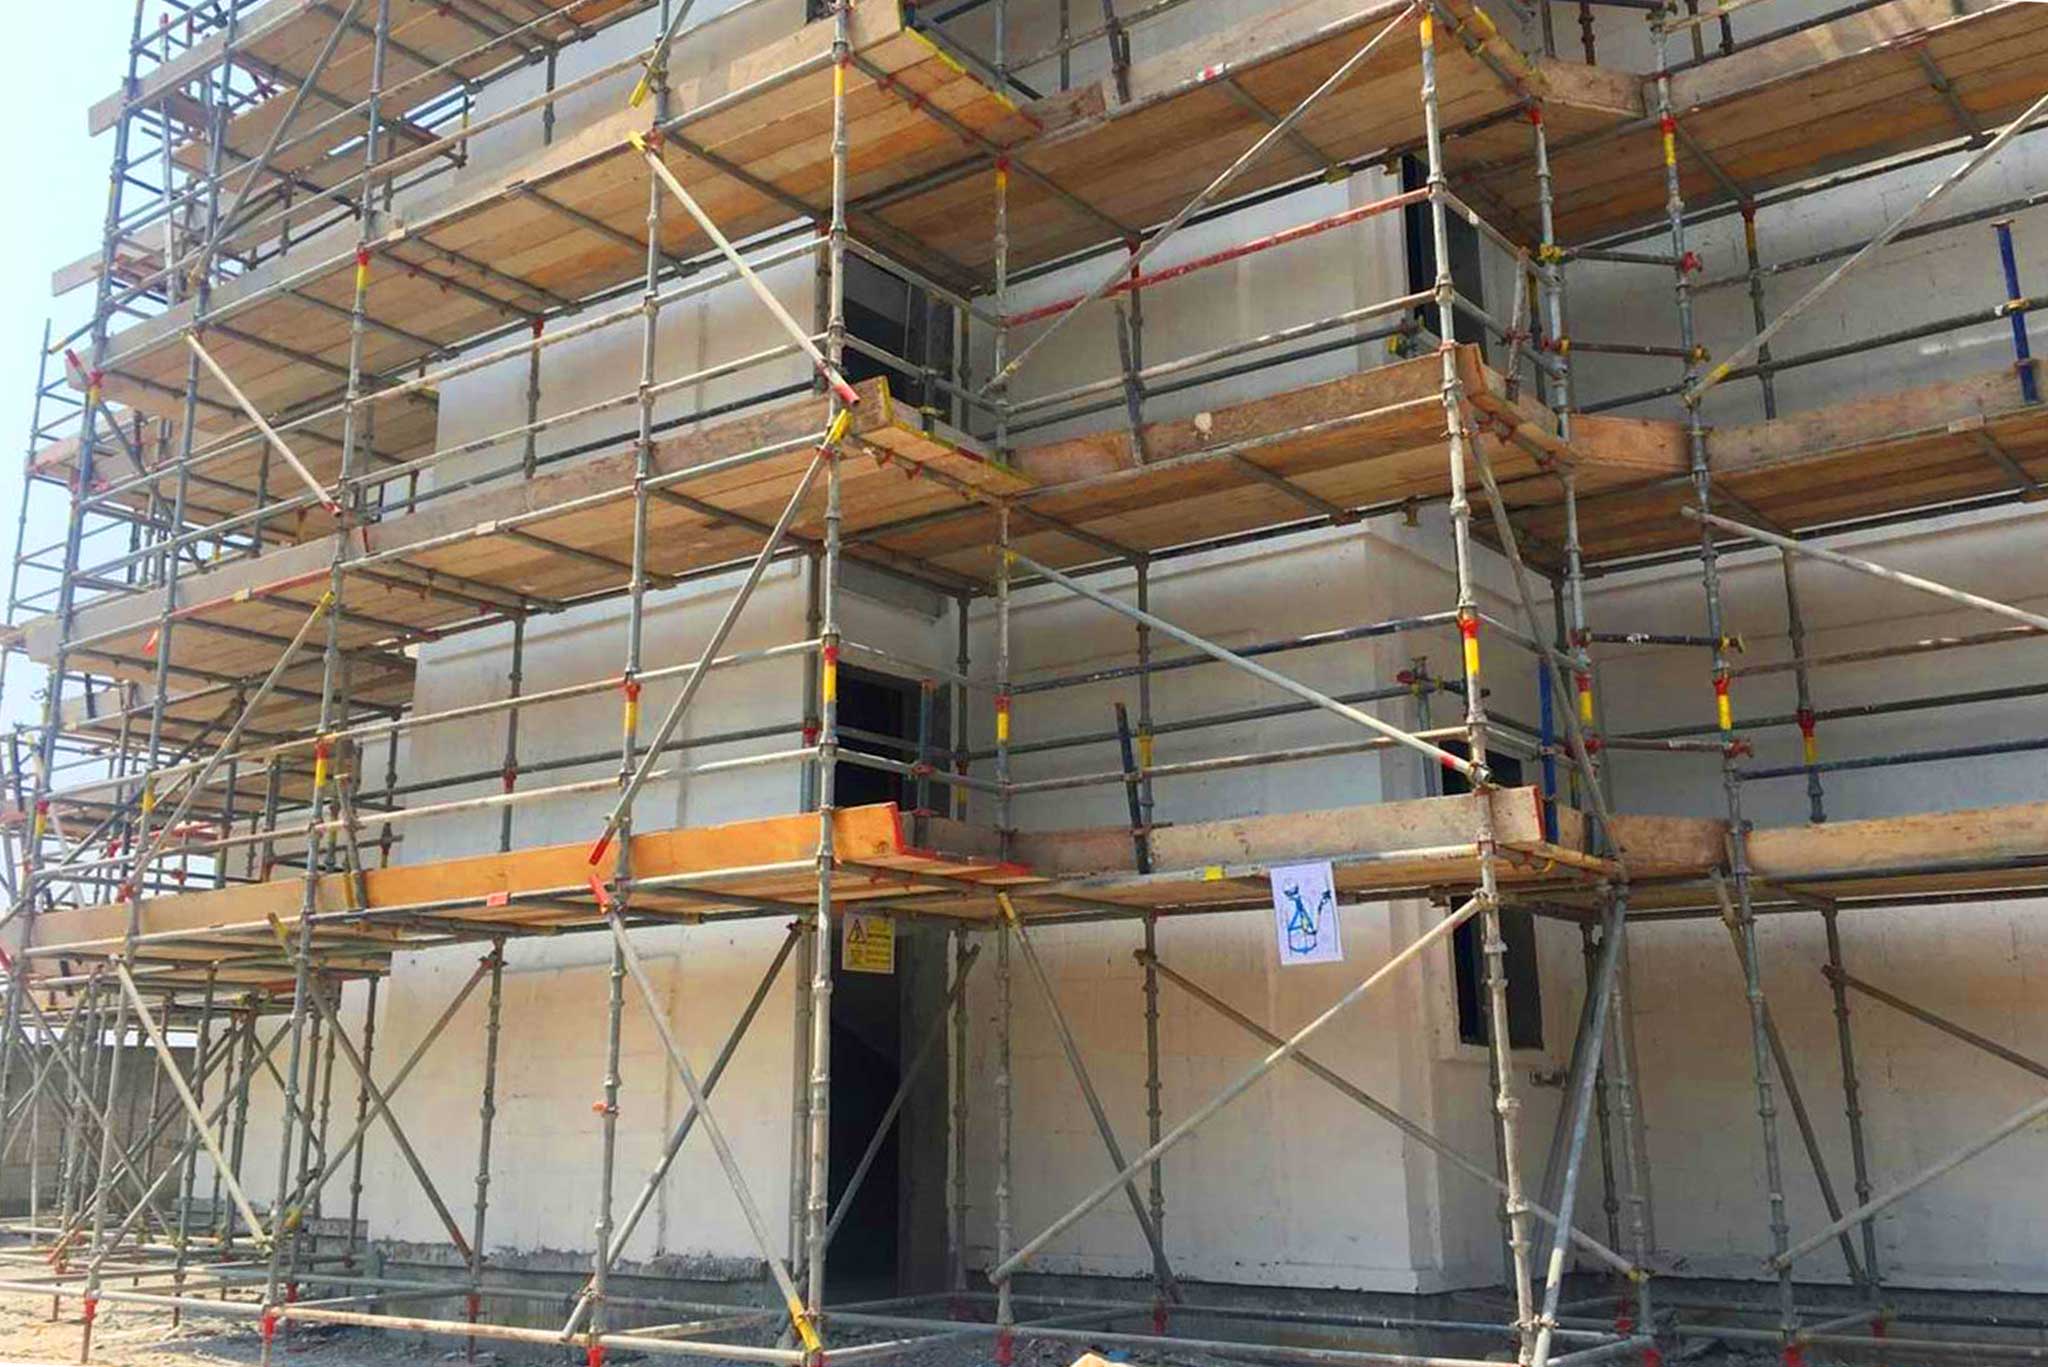 scaffolding suppliers in uae